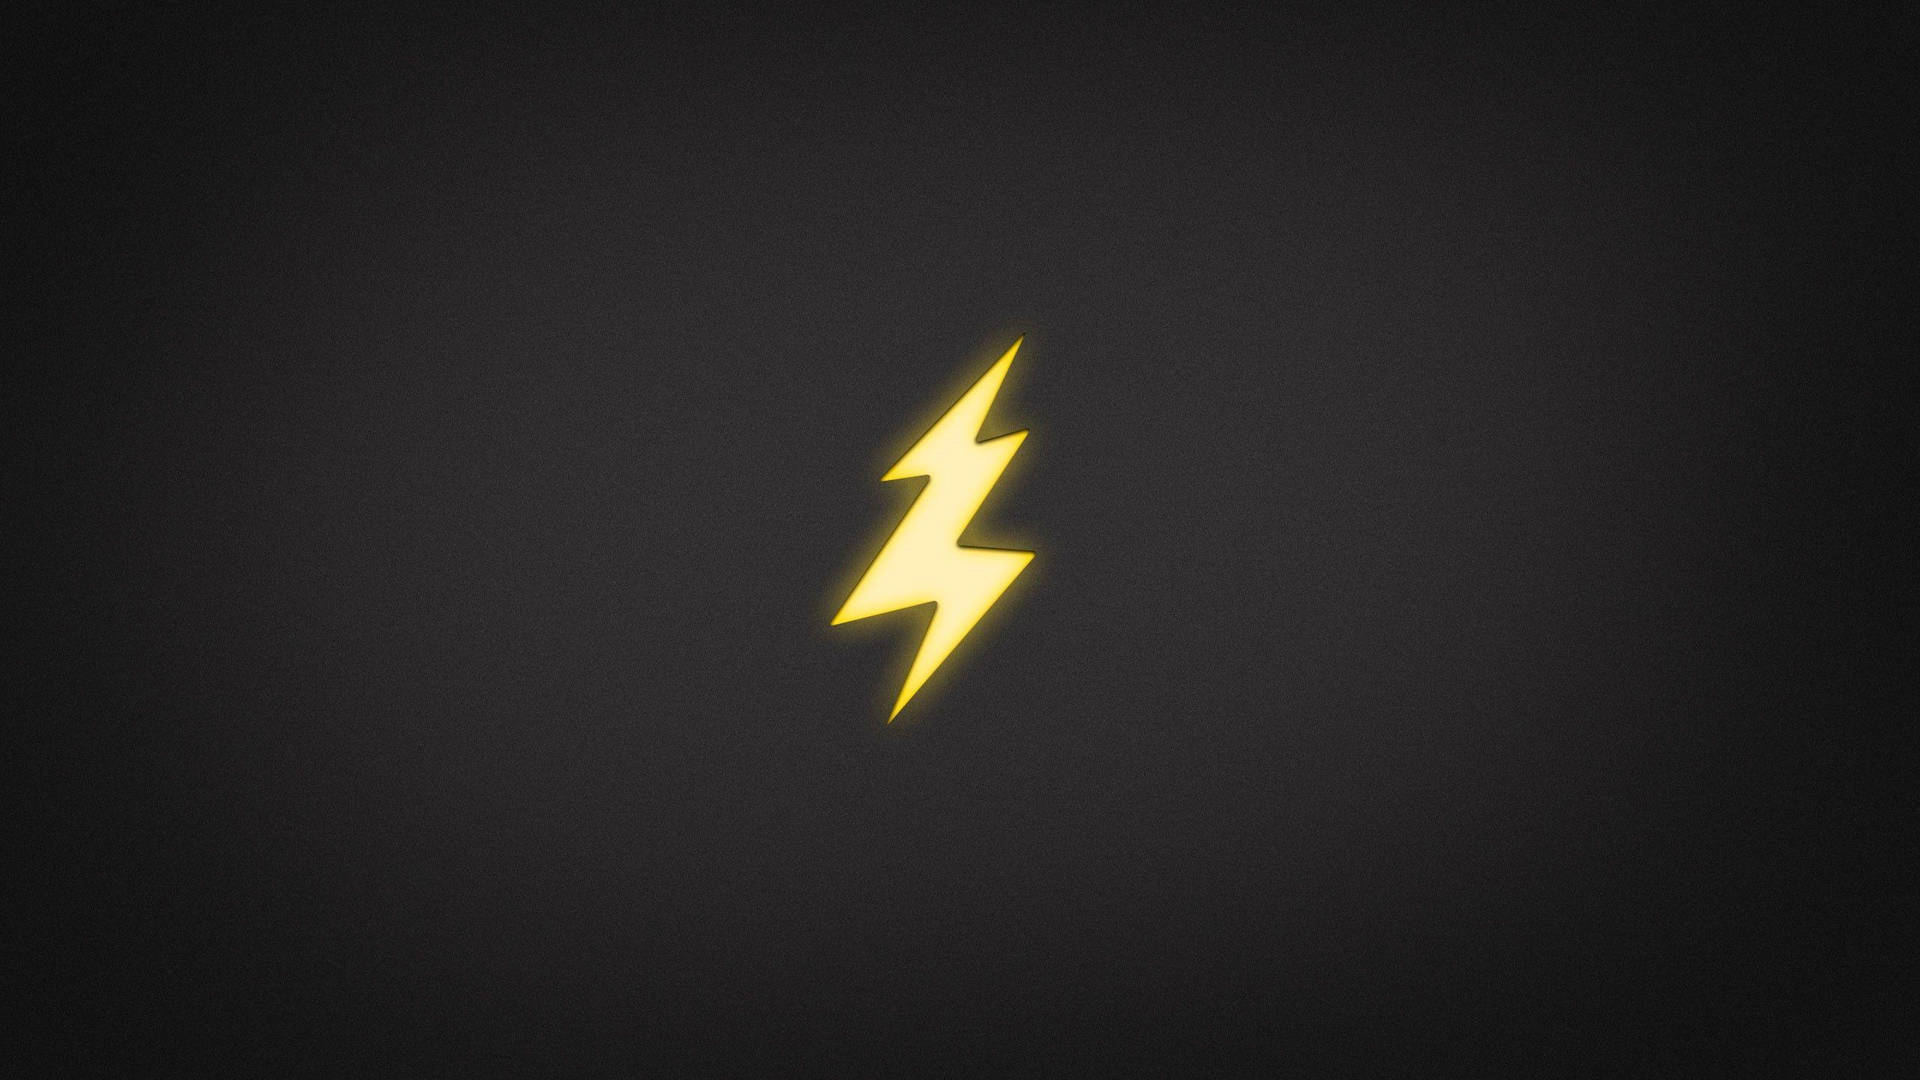 Shining Electricity Symbol Background